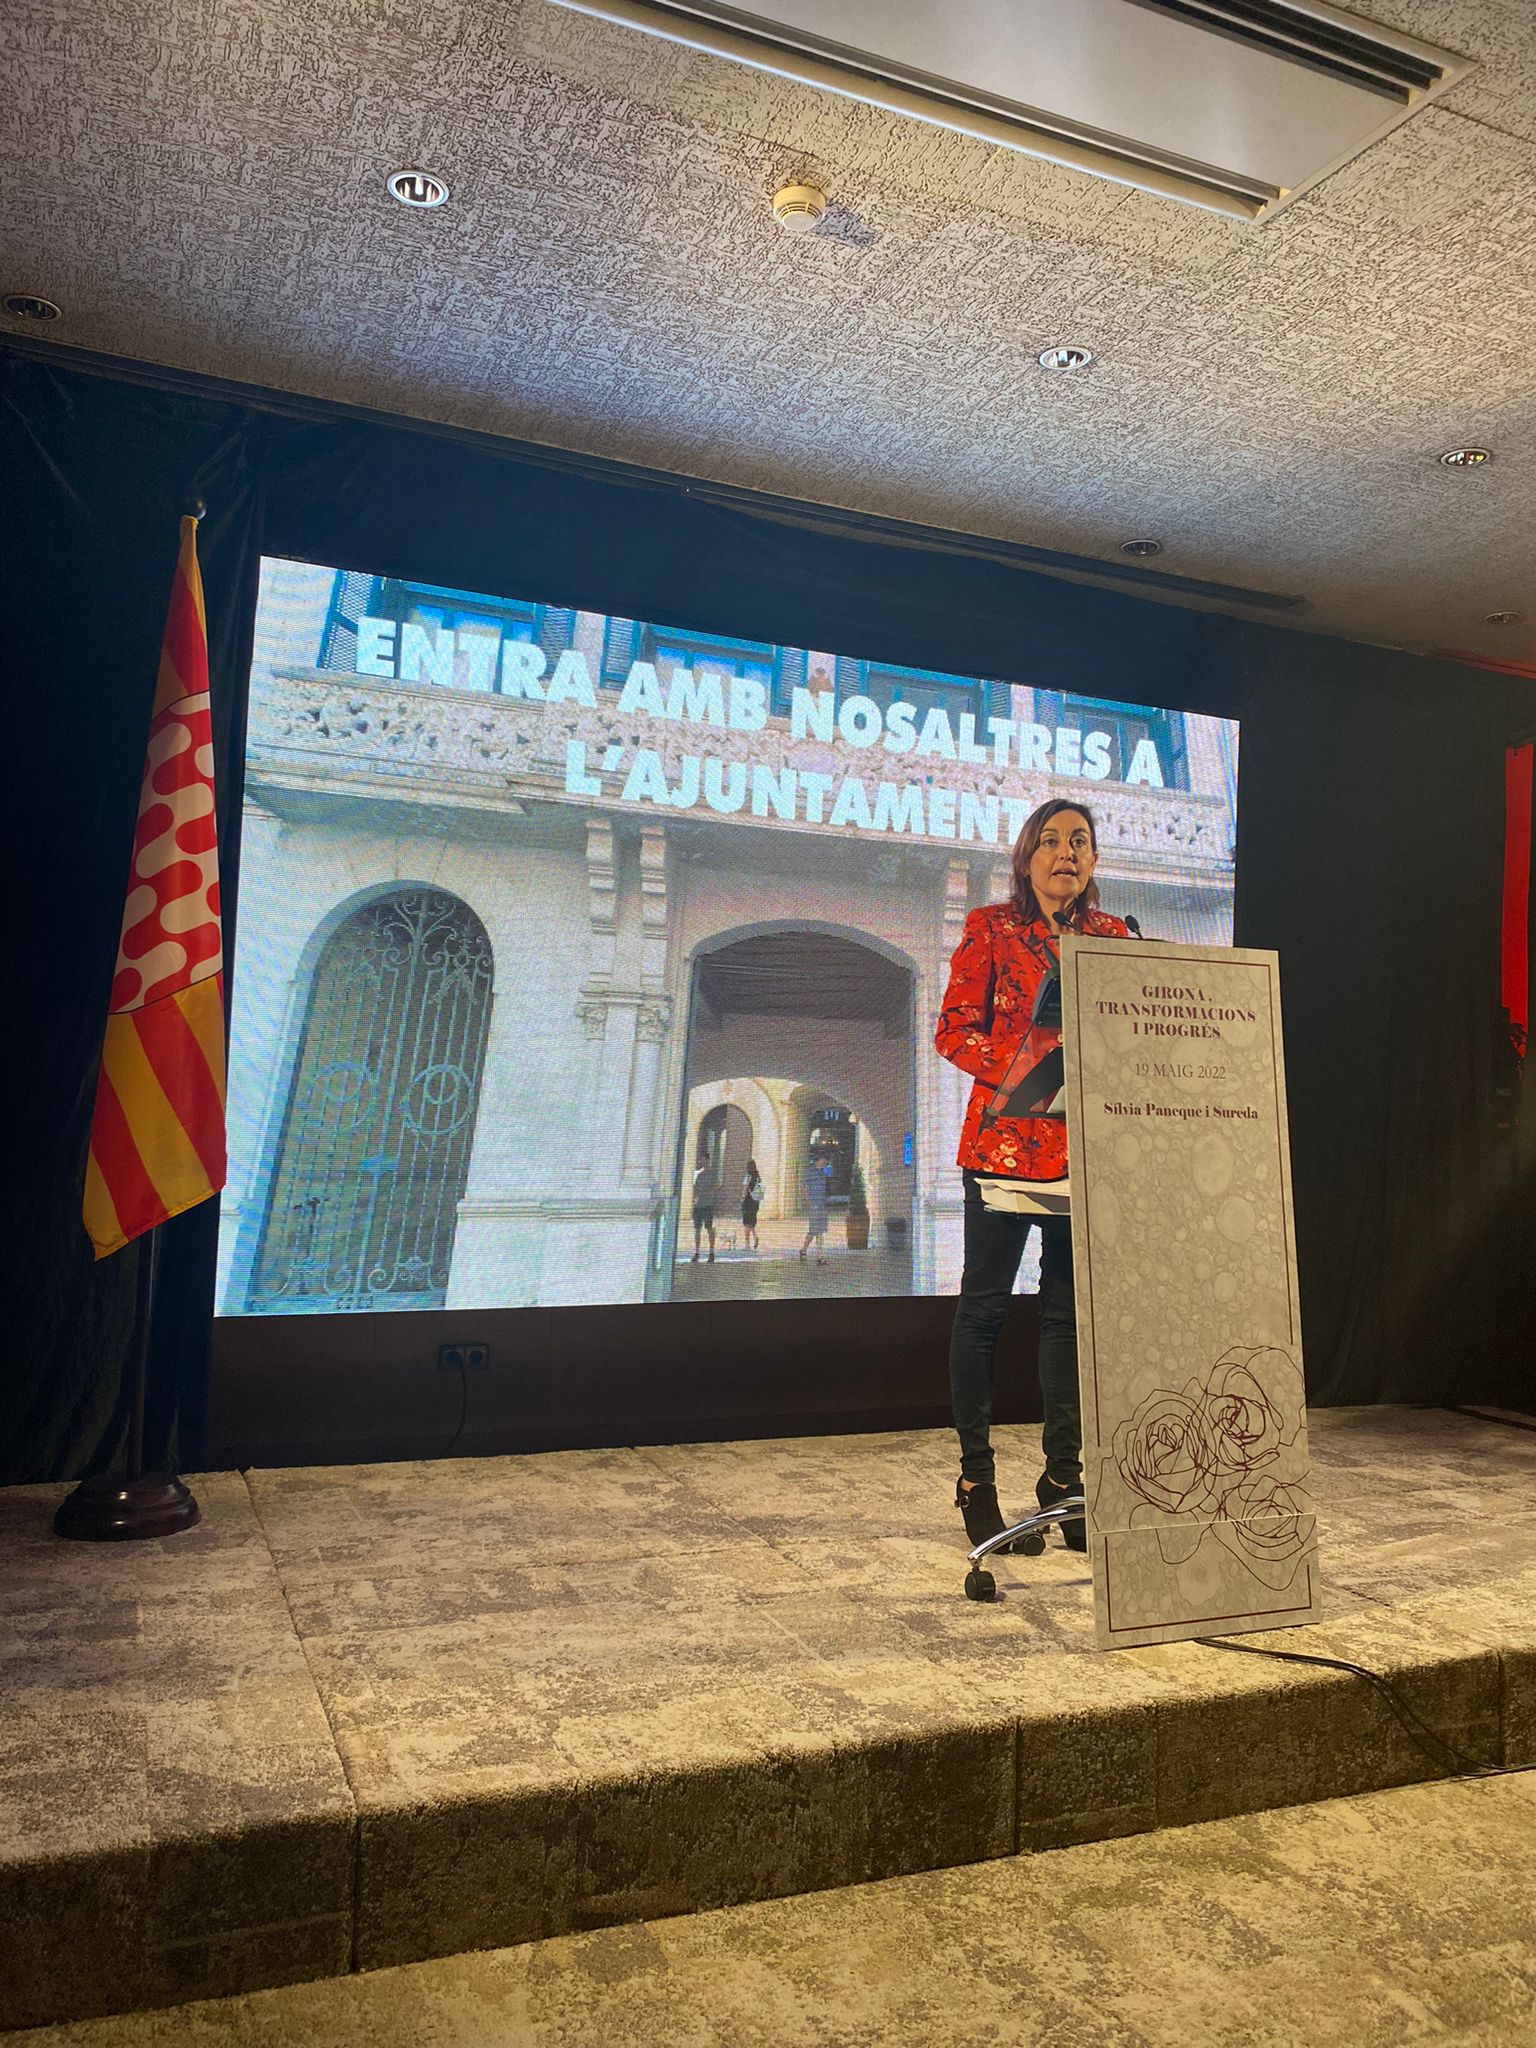 Sílvia Paneque desgrana els motius pels quals vol ser alcaldessa de Girona en la presentació del seu projecte de ciutat